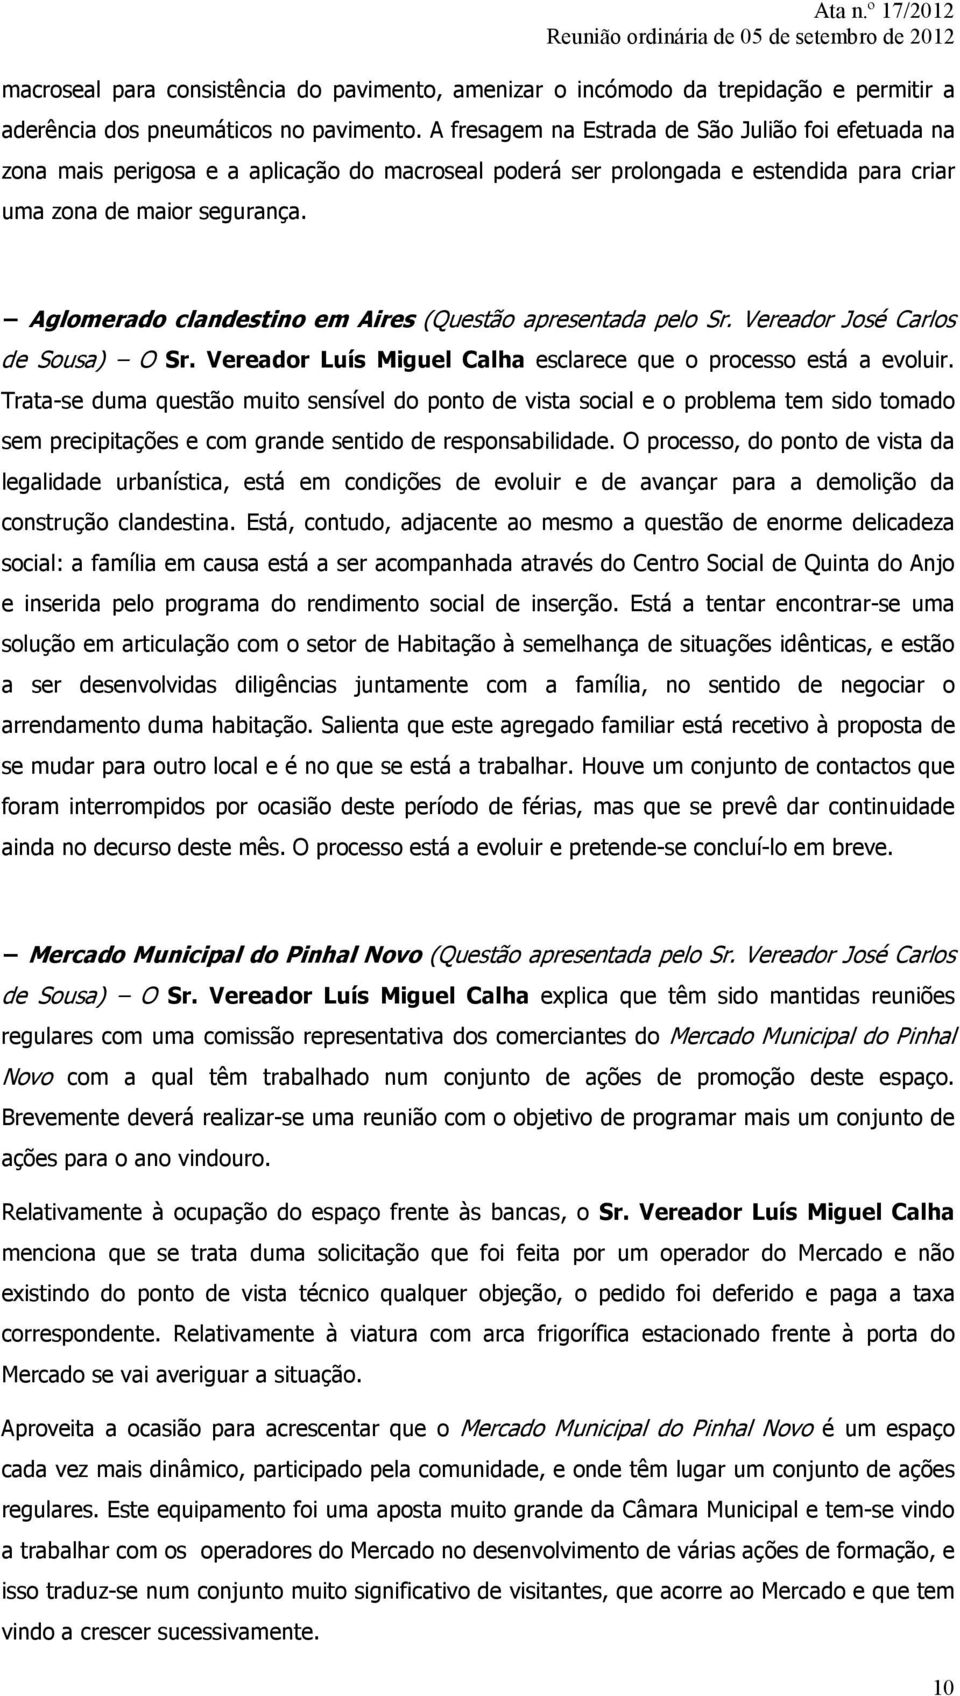 Aglomerado clandestino em Aires (Questão apresentada pelo Sr. Vereador José Carlos de Sousa) O Sr. Vereador Luís Miguel Calha esclarece que o processo está a evoluir.